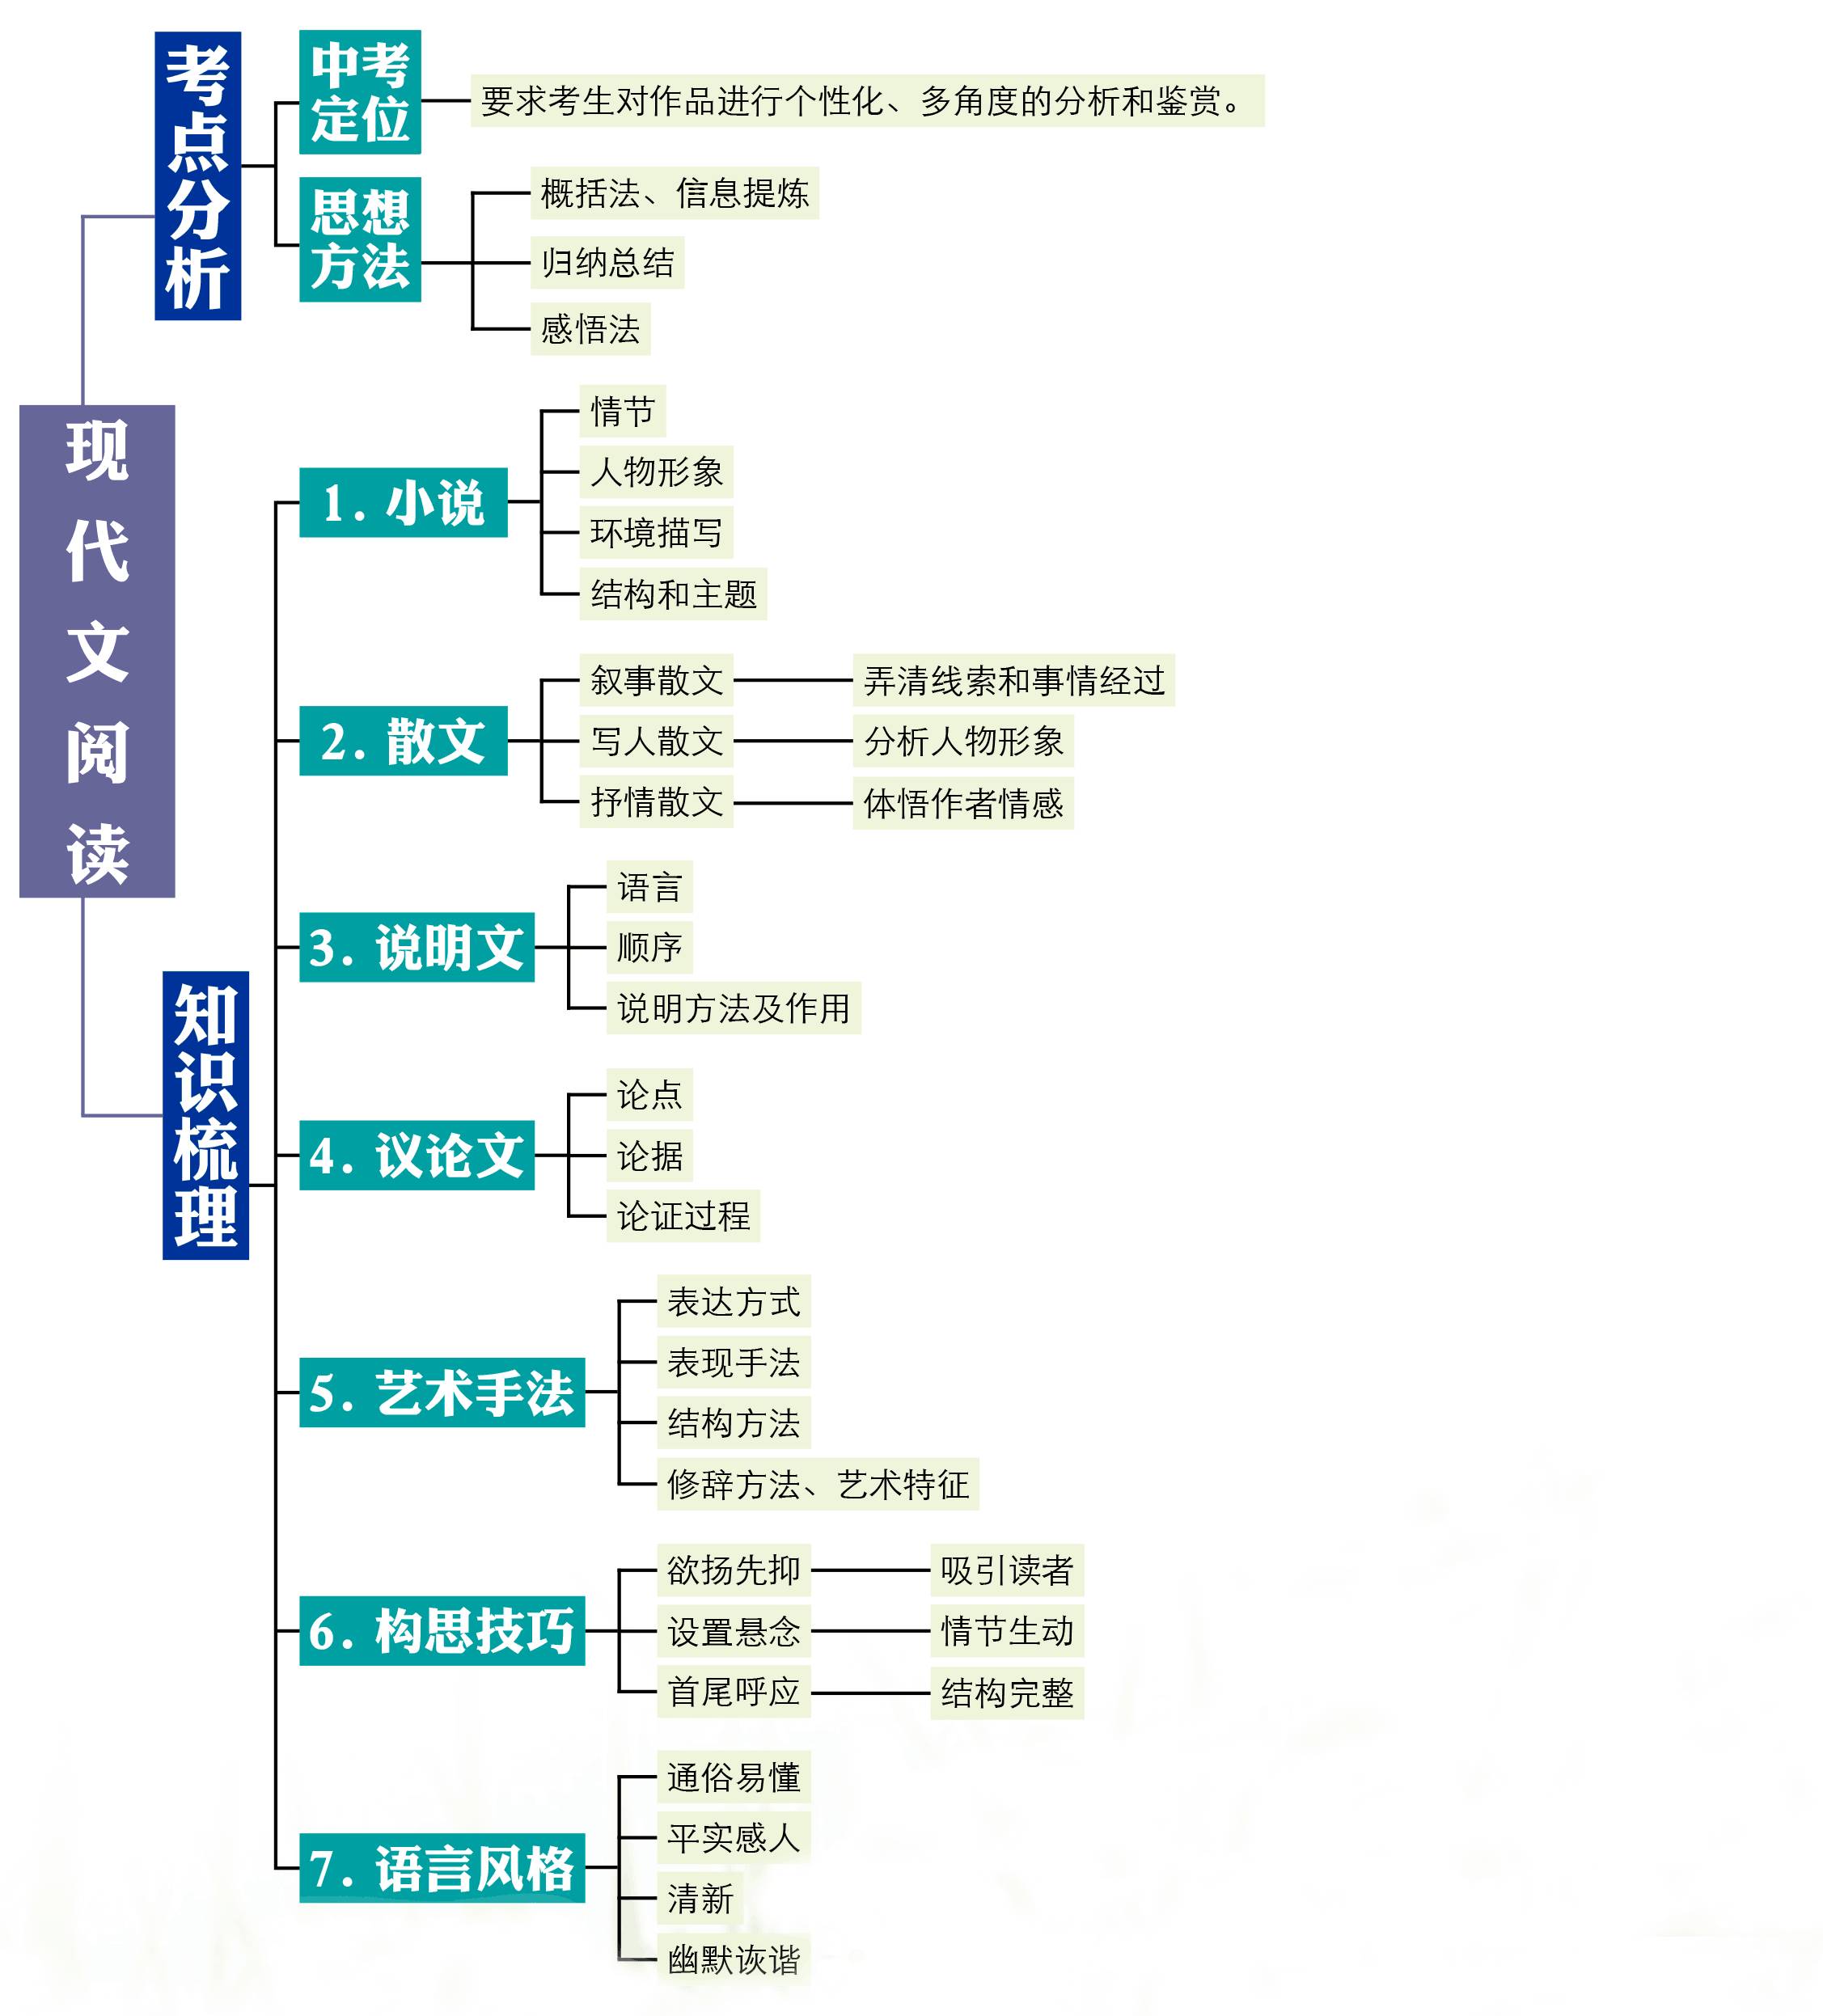 女学霸亲手画的思维导图,8张图涵盖初中语文全部知识点!